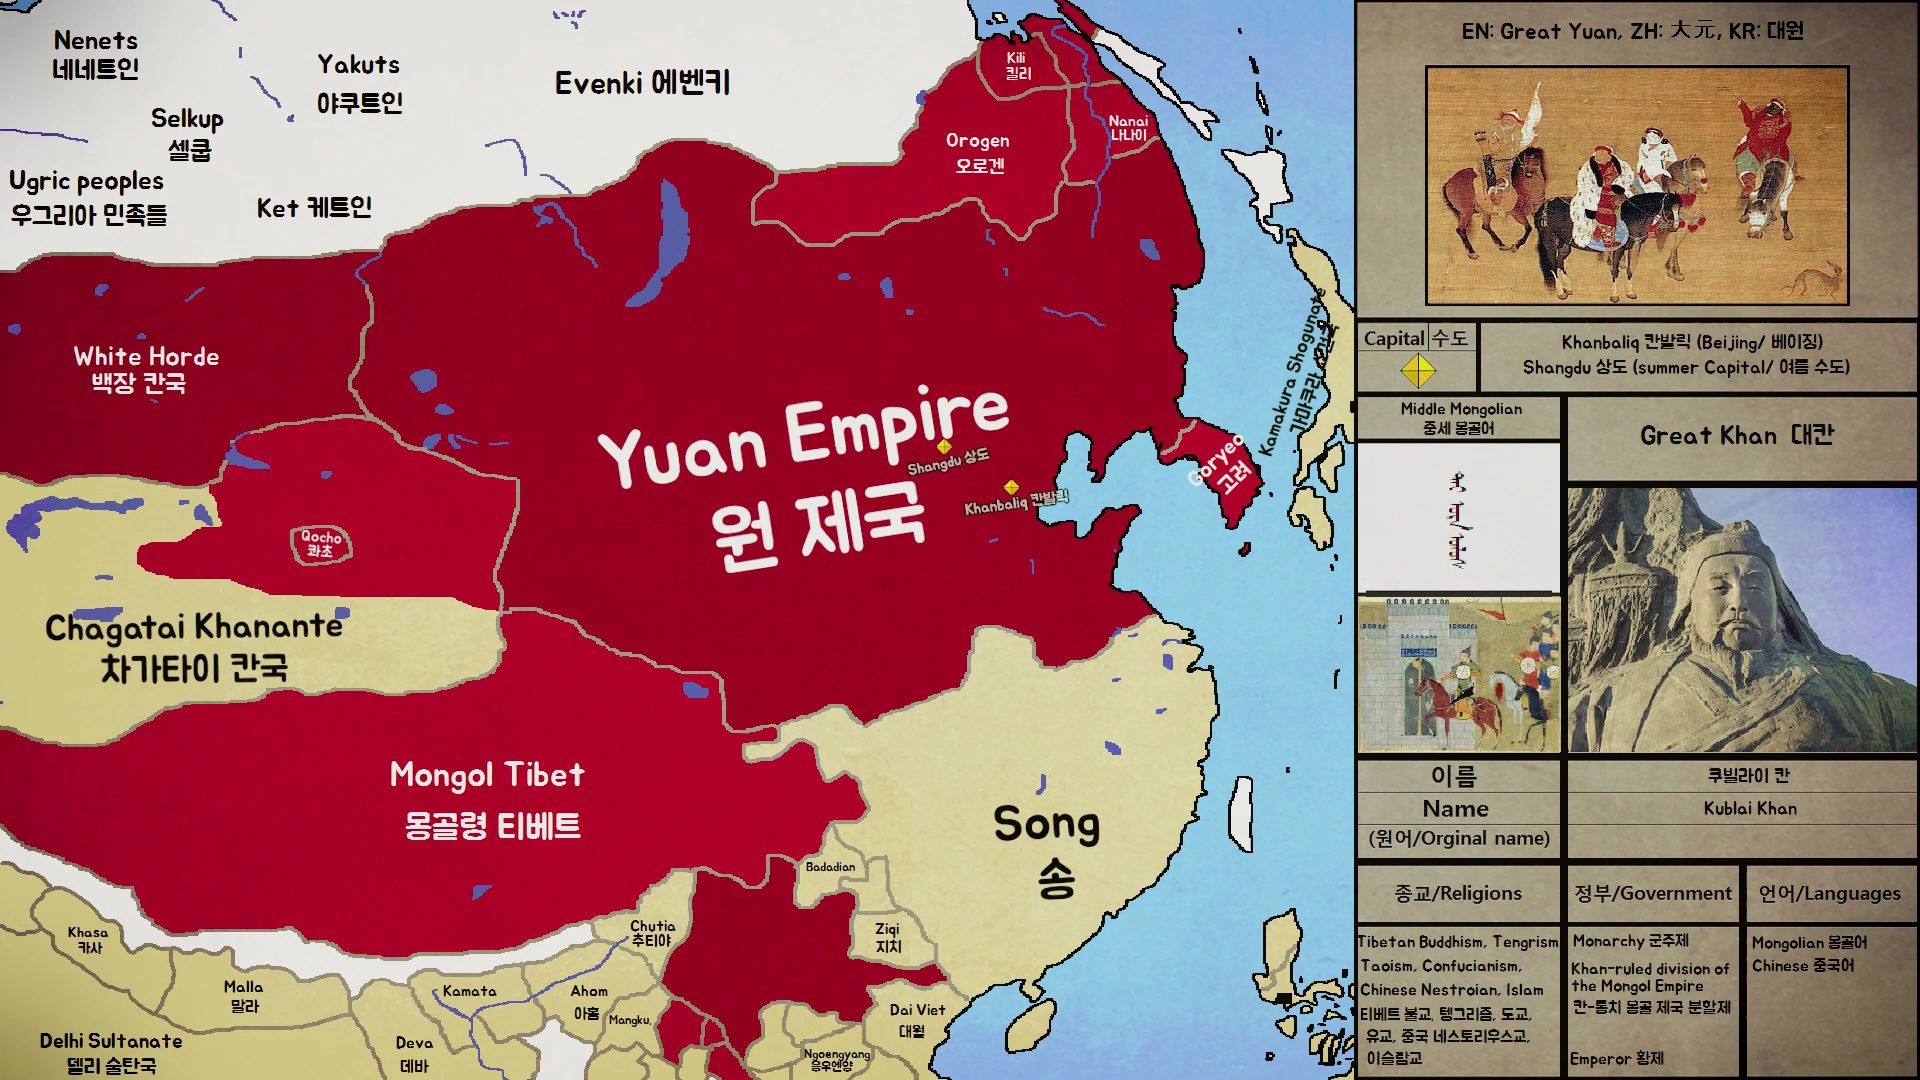 【历史地图】 元朝的疆域历史变化图(1271年~1368年)新版本